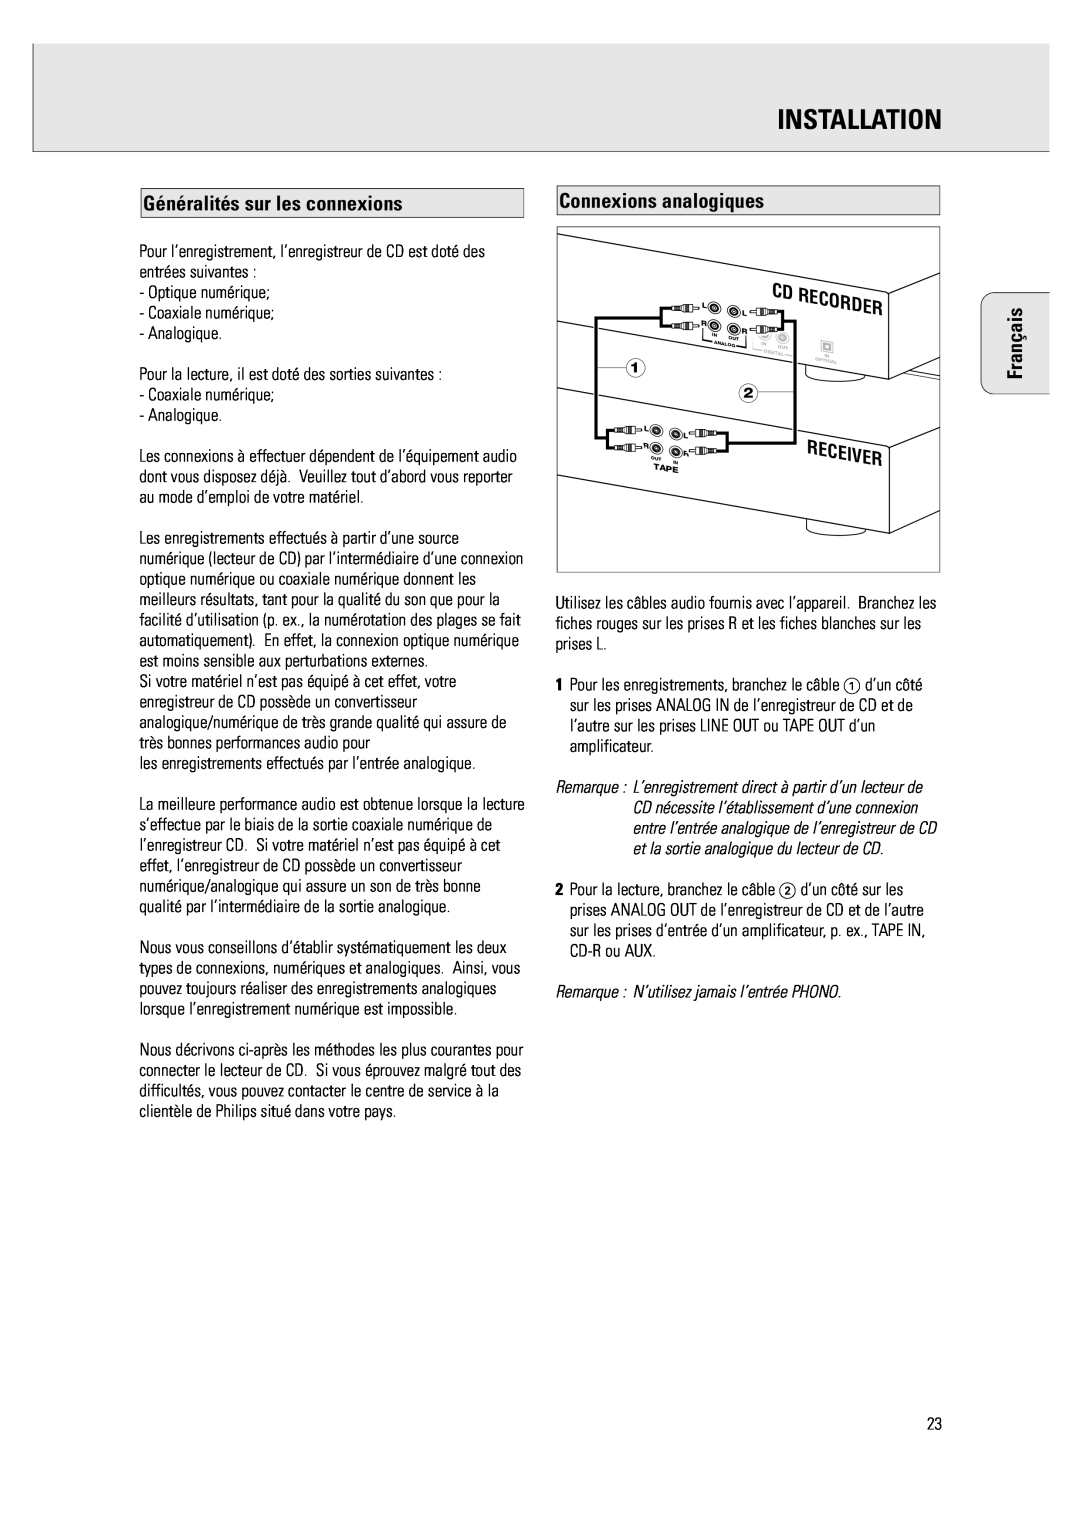 Philips CDR 760 manual Généralités sur les connexions, Installation, Français, Connexions analogiques, Recorder, Receiver 